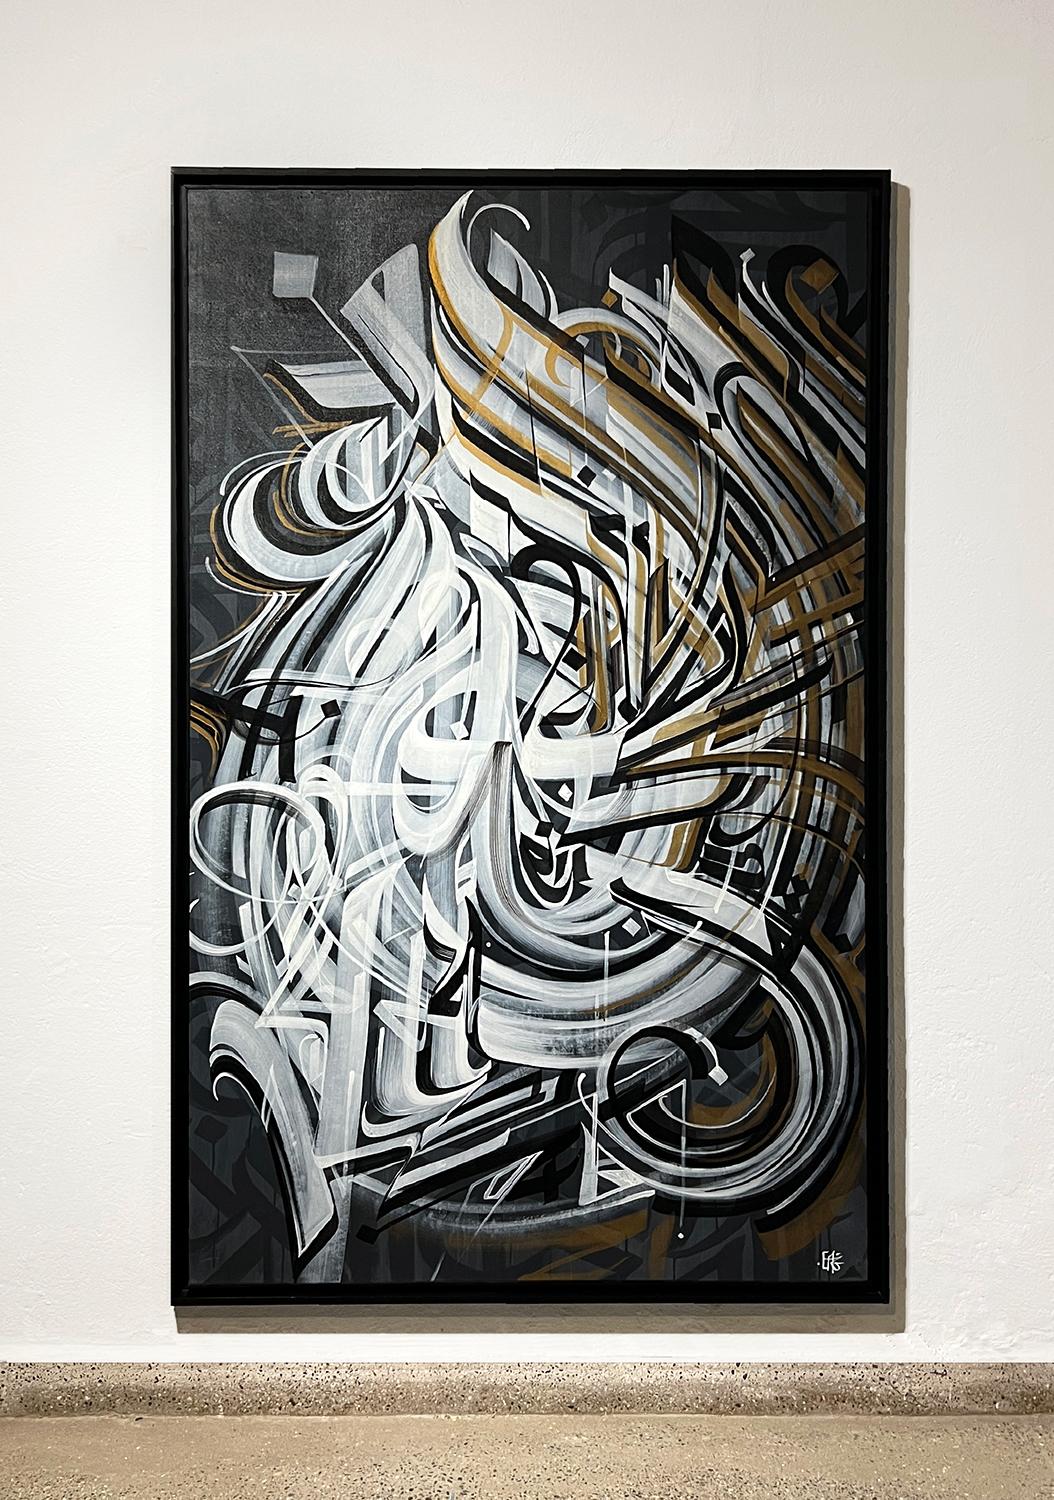 Calligraphie abstraite.
Technique mixte sur toile.
Cadre extérieur noir.
Dimensions du cadre : 196x126x5cm.
Signature au dos.